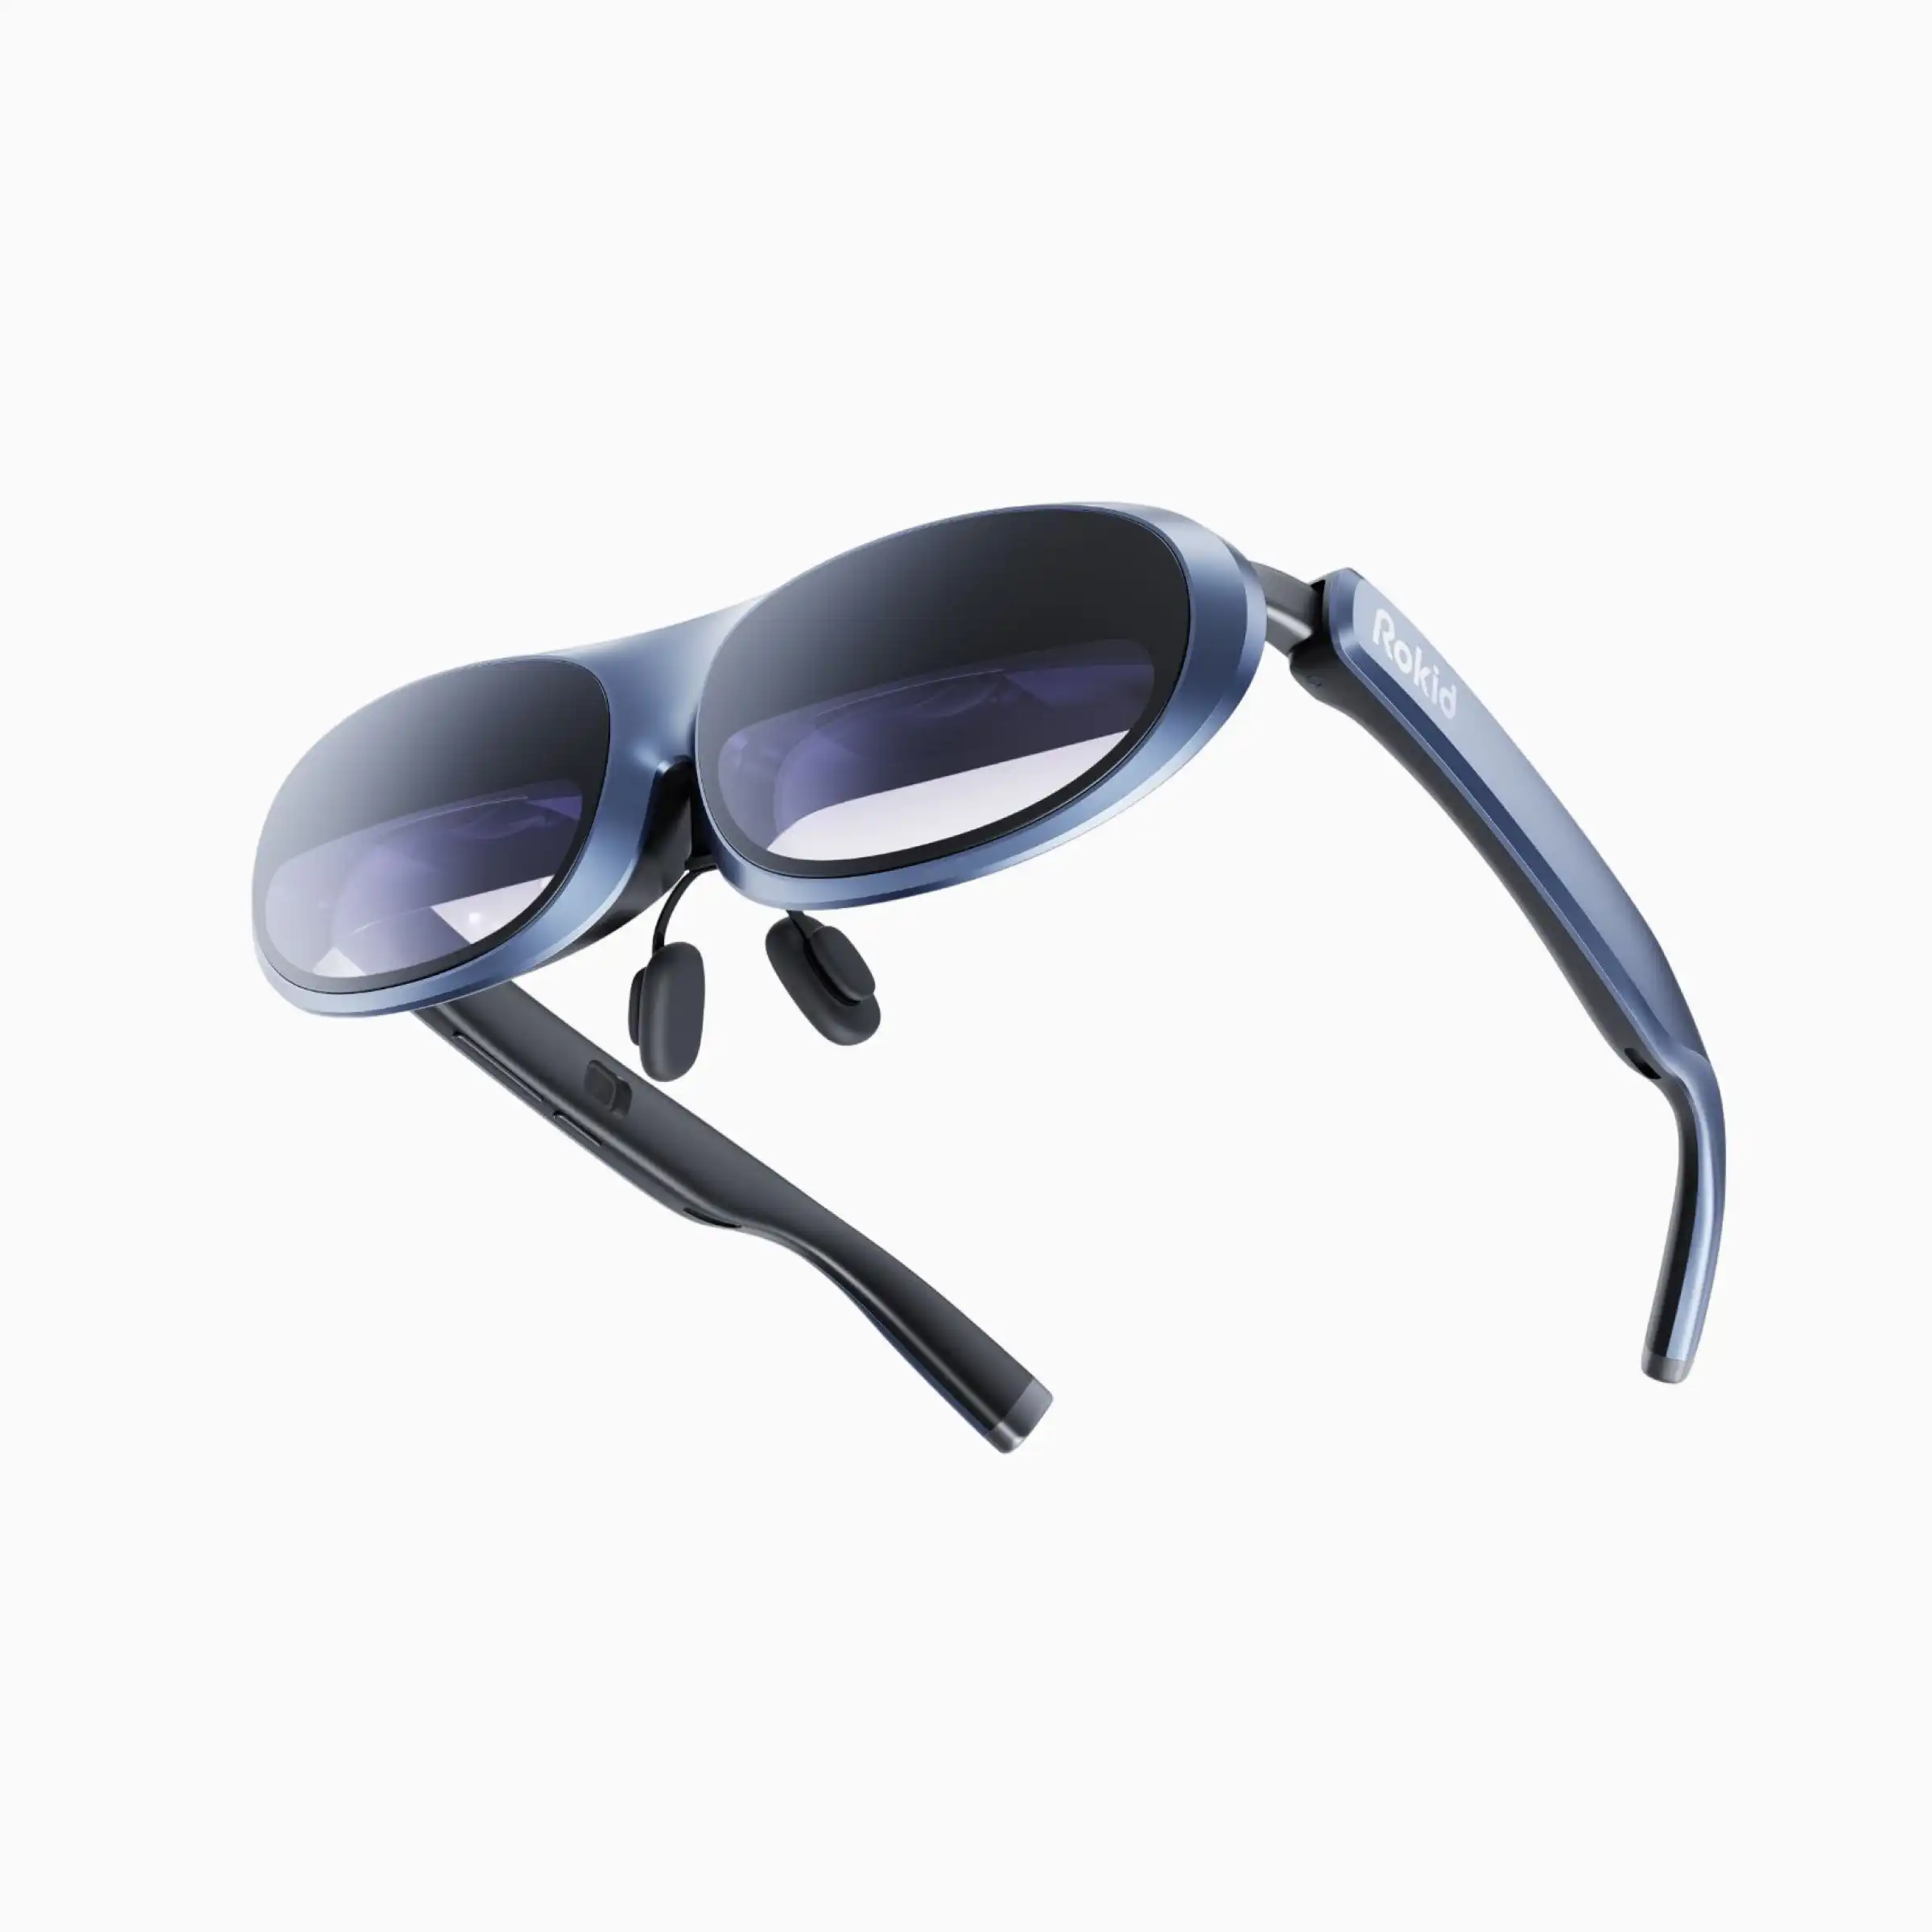 Venta caliente Wupro x Rokid Max Ar Gafas 3D Soporte 120Hz Frecuencia de actualización 250 pulgadas Tamaño de imagen 4K Smart Meta AR/VR Gafas